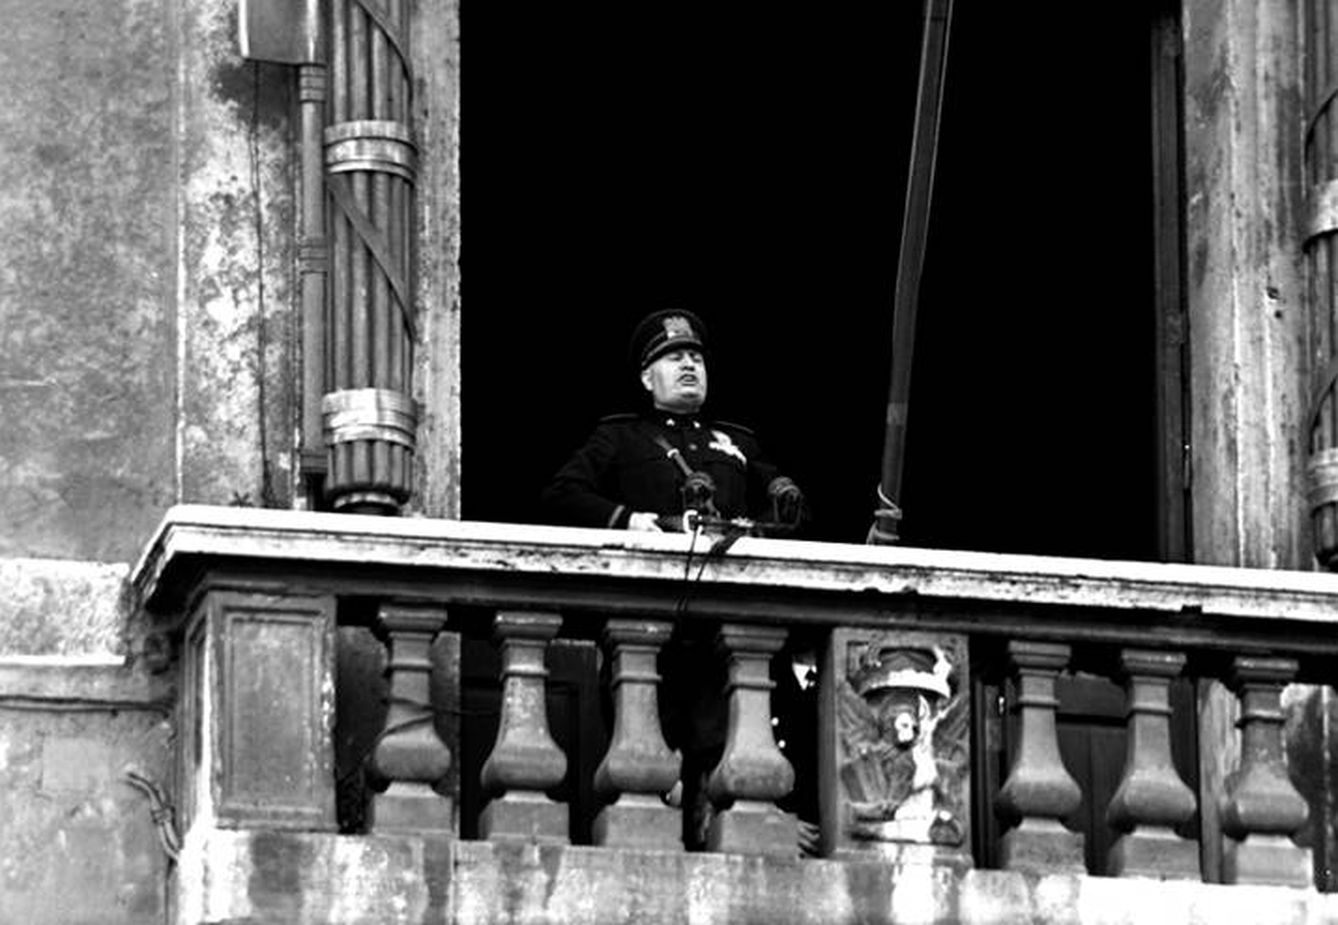 El 10 de junio de 1940 el Duce declaró la guerra a Francia y Gran Bretaña en el proverbial balcón de piazza Venezia